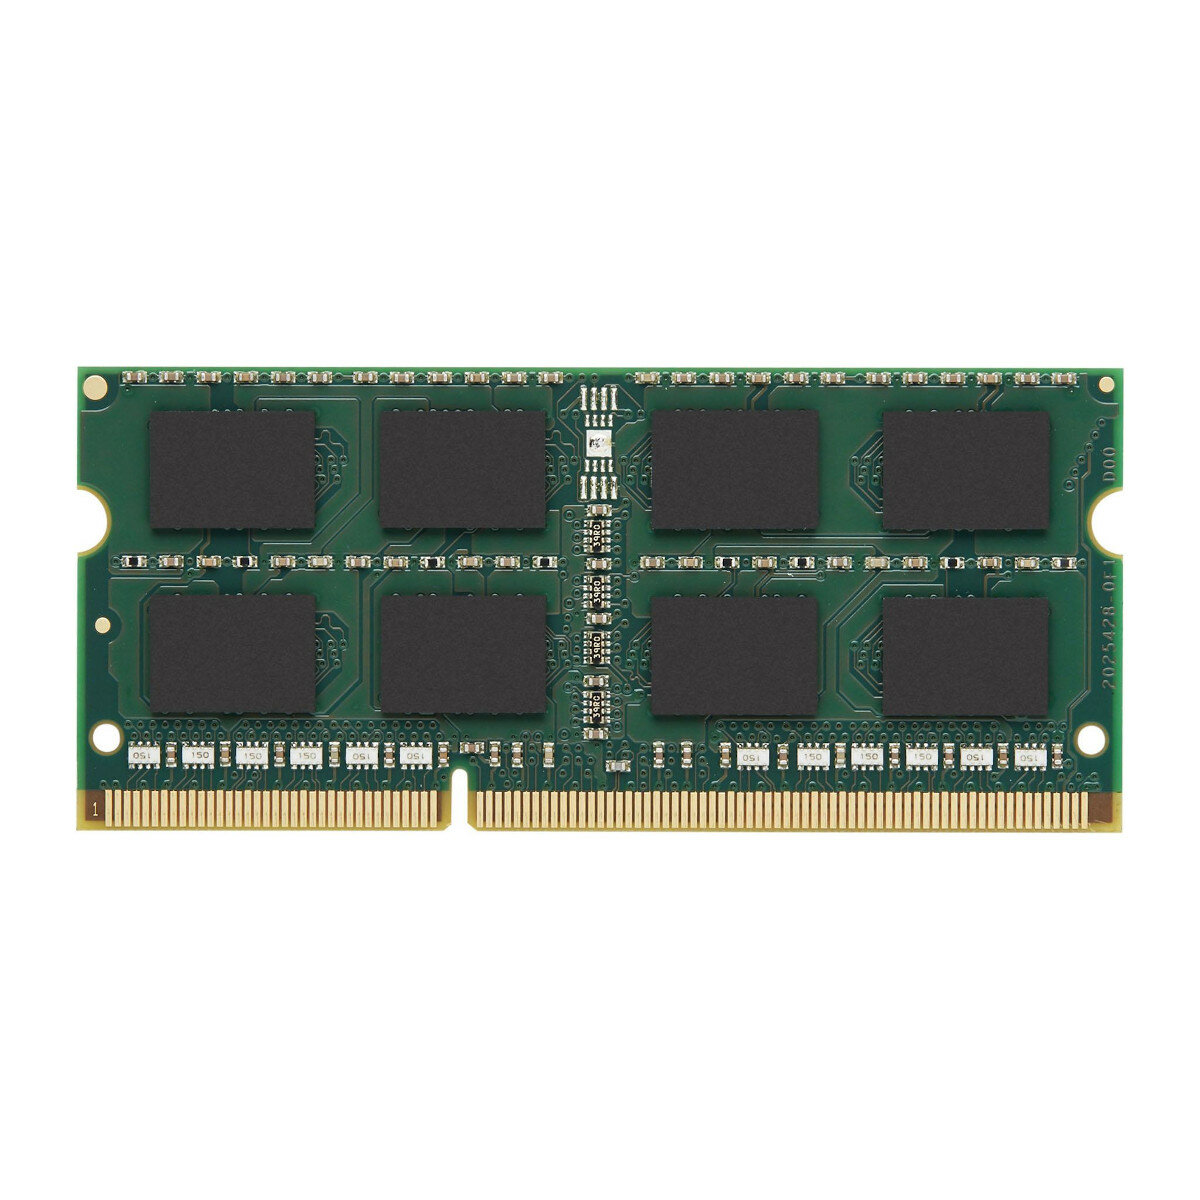 Pamięć RAM Kingston DDR3 1600 MT/s zdjęcie kości pamięci od przodu